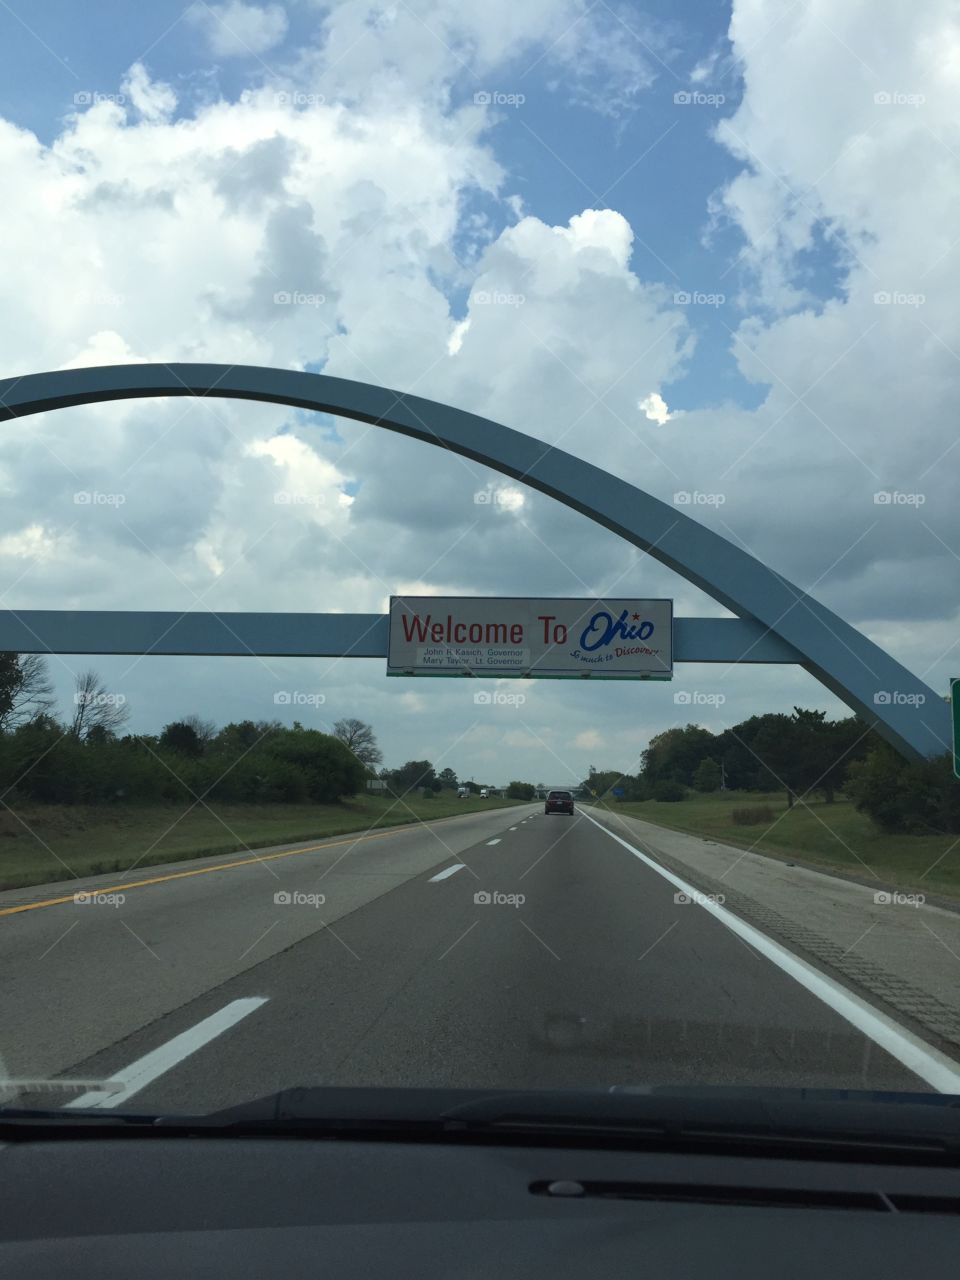 Driving through Ohio 